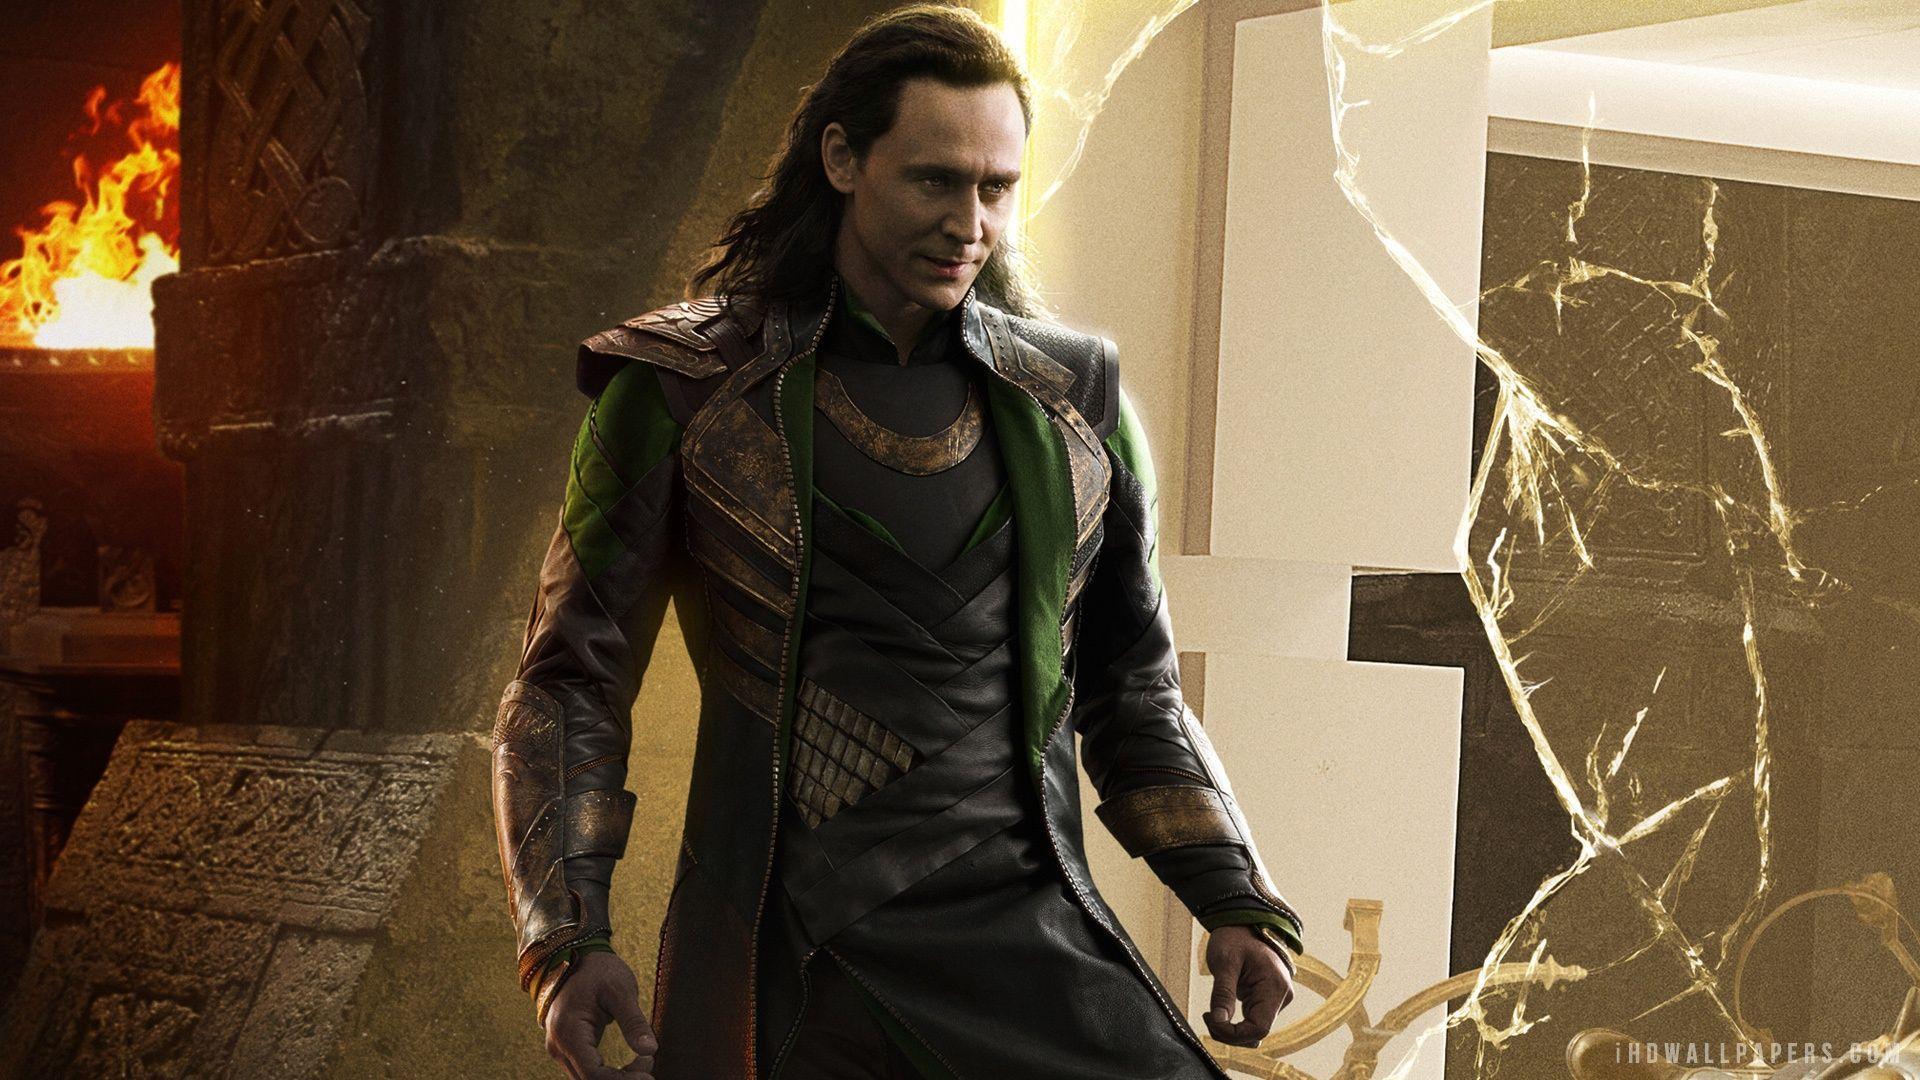 loki wallpaper. Loki in Thor 2 Wallpaper. Loki. Loki